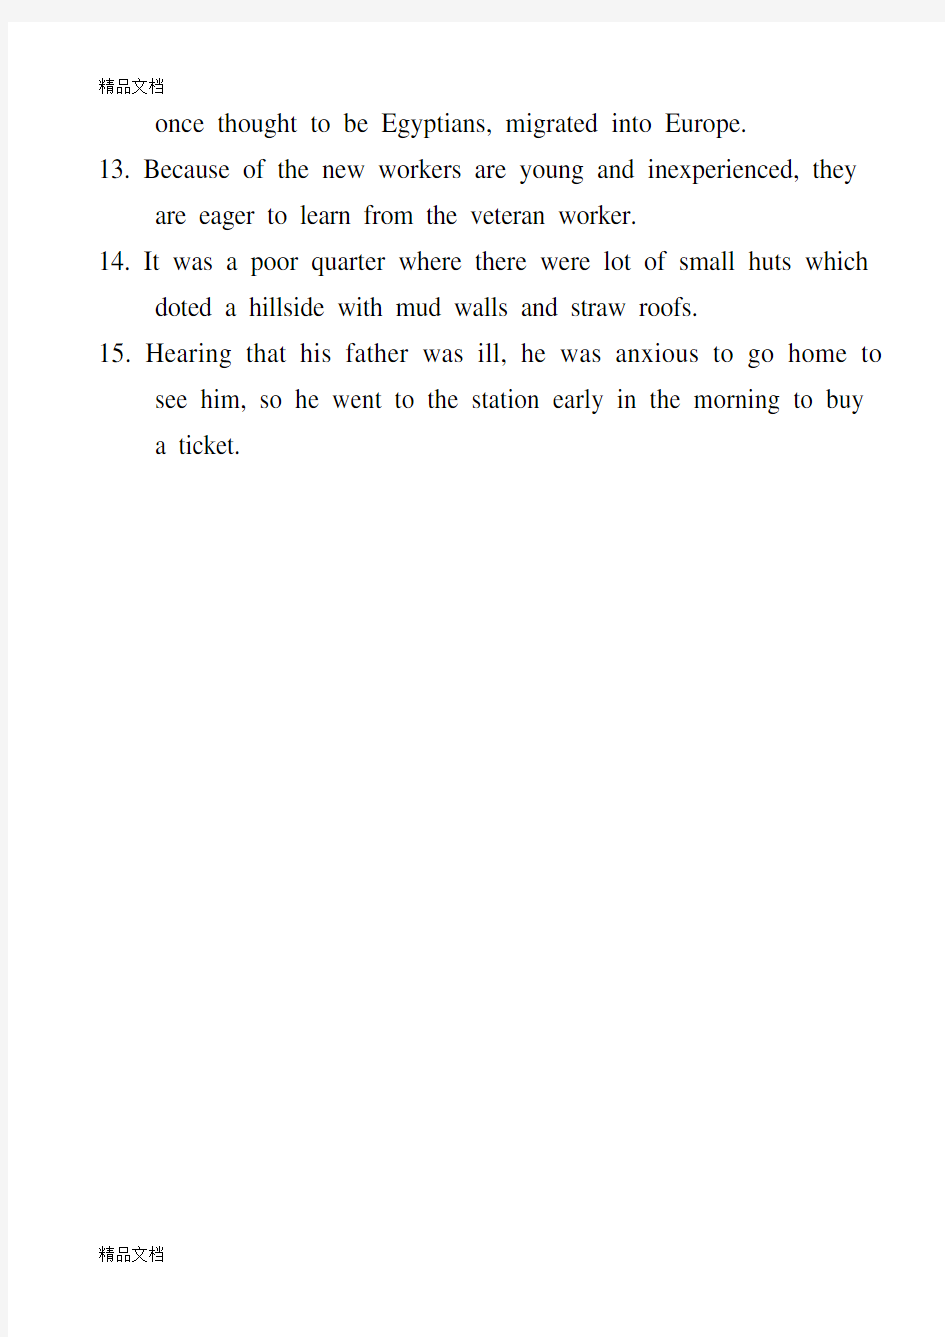 丁往道英语写作手册 part3 第三题答案培训资料